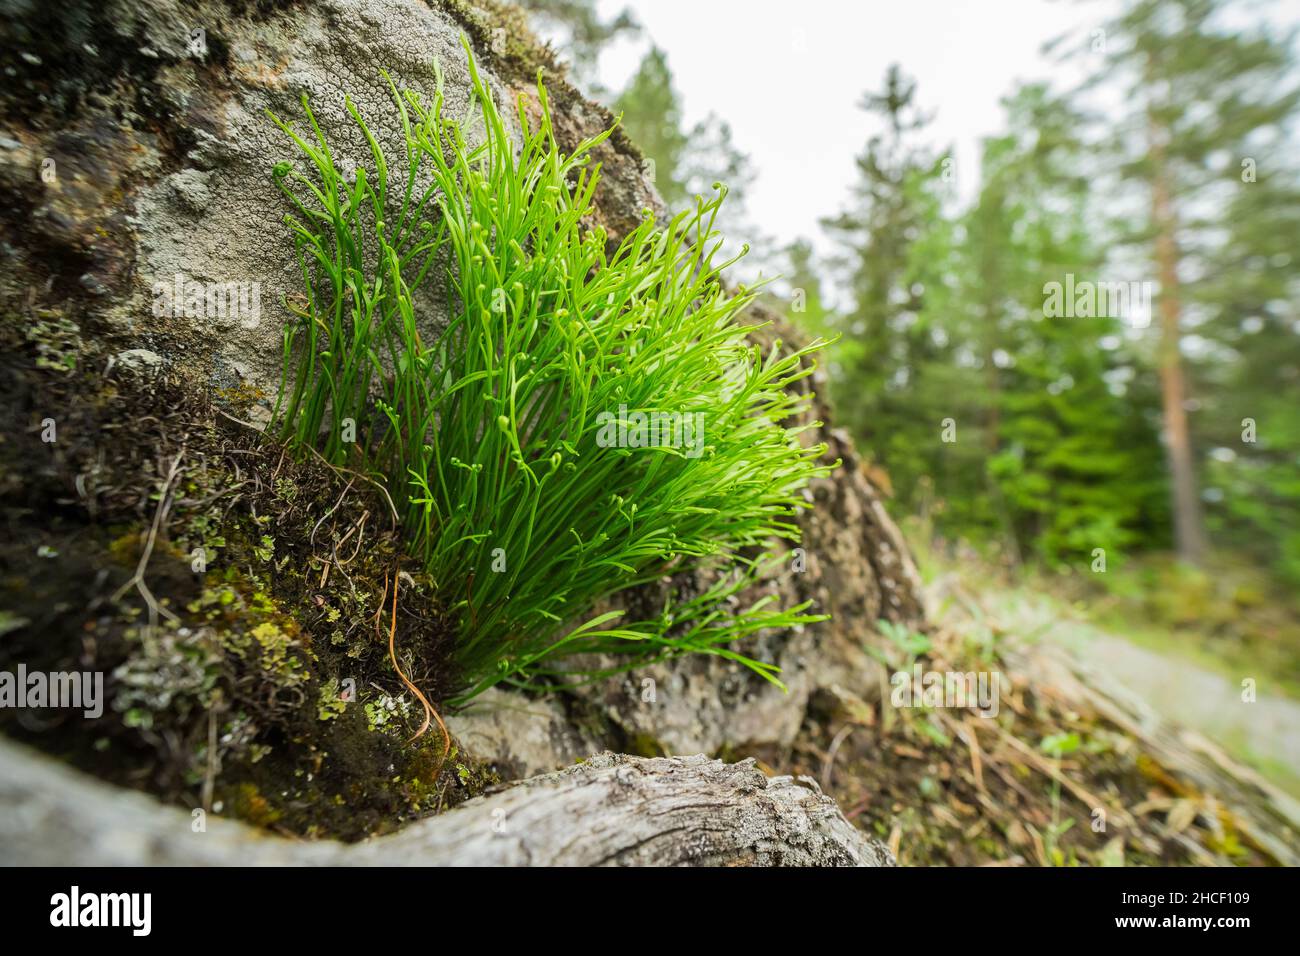 Forked spleenwort fern (Asplenium septentrionale) Stock Photo